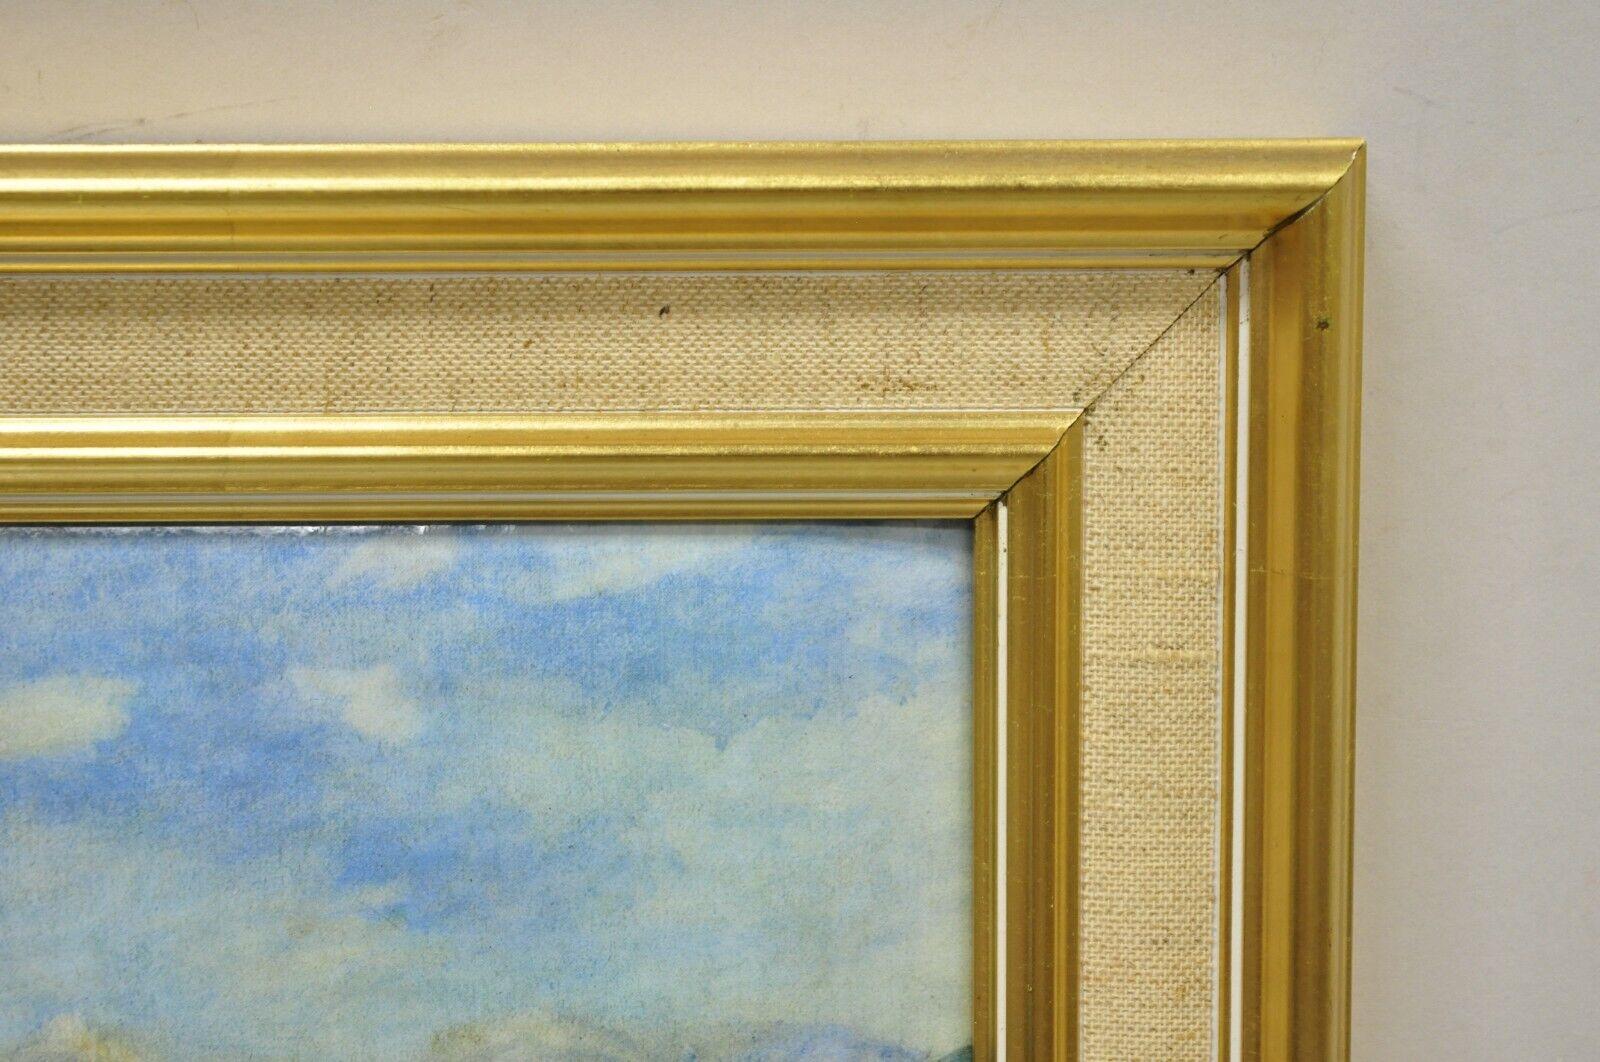 French Helca Martele A La Main Hammered Enamel Painting Renoir Vue de Cagnes For Sale